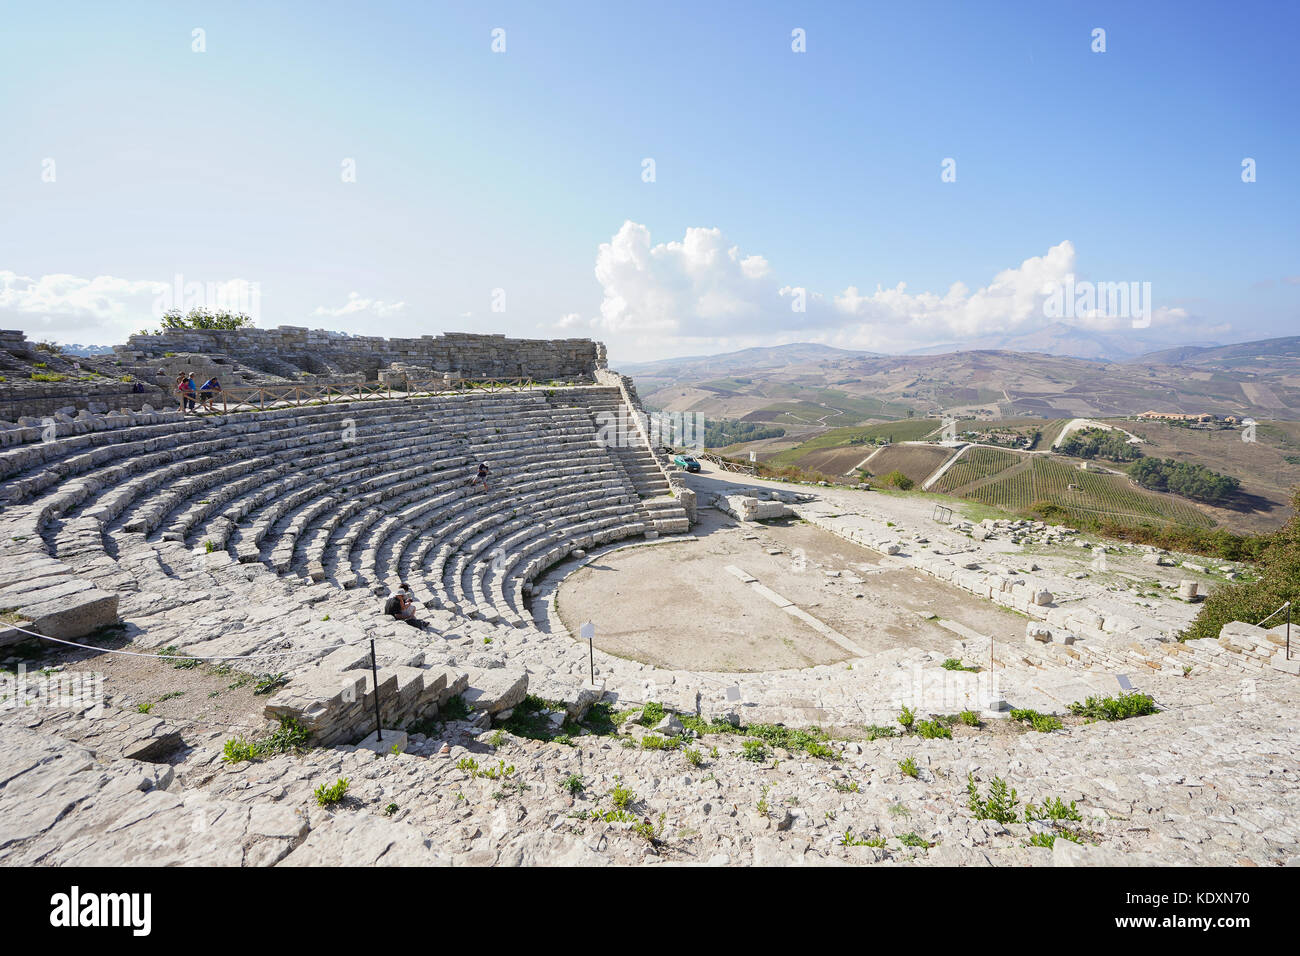 L' anfiteatro romano al sito storico di Segesta. da una serie di foto di viaggio in Sicilia, Italia. photo Data: sabato, 30 settembre 2017. p Foto Stock